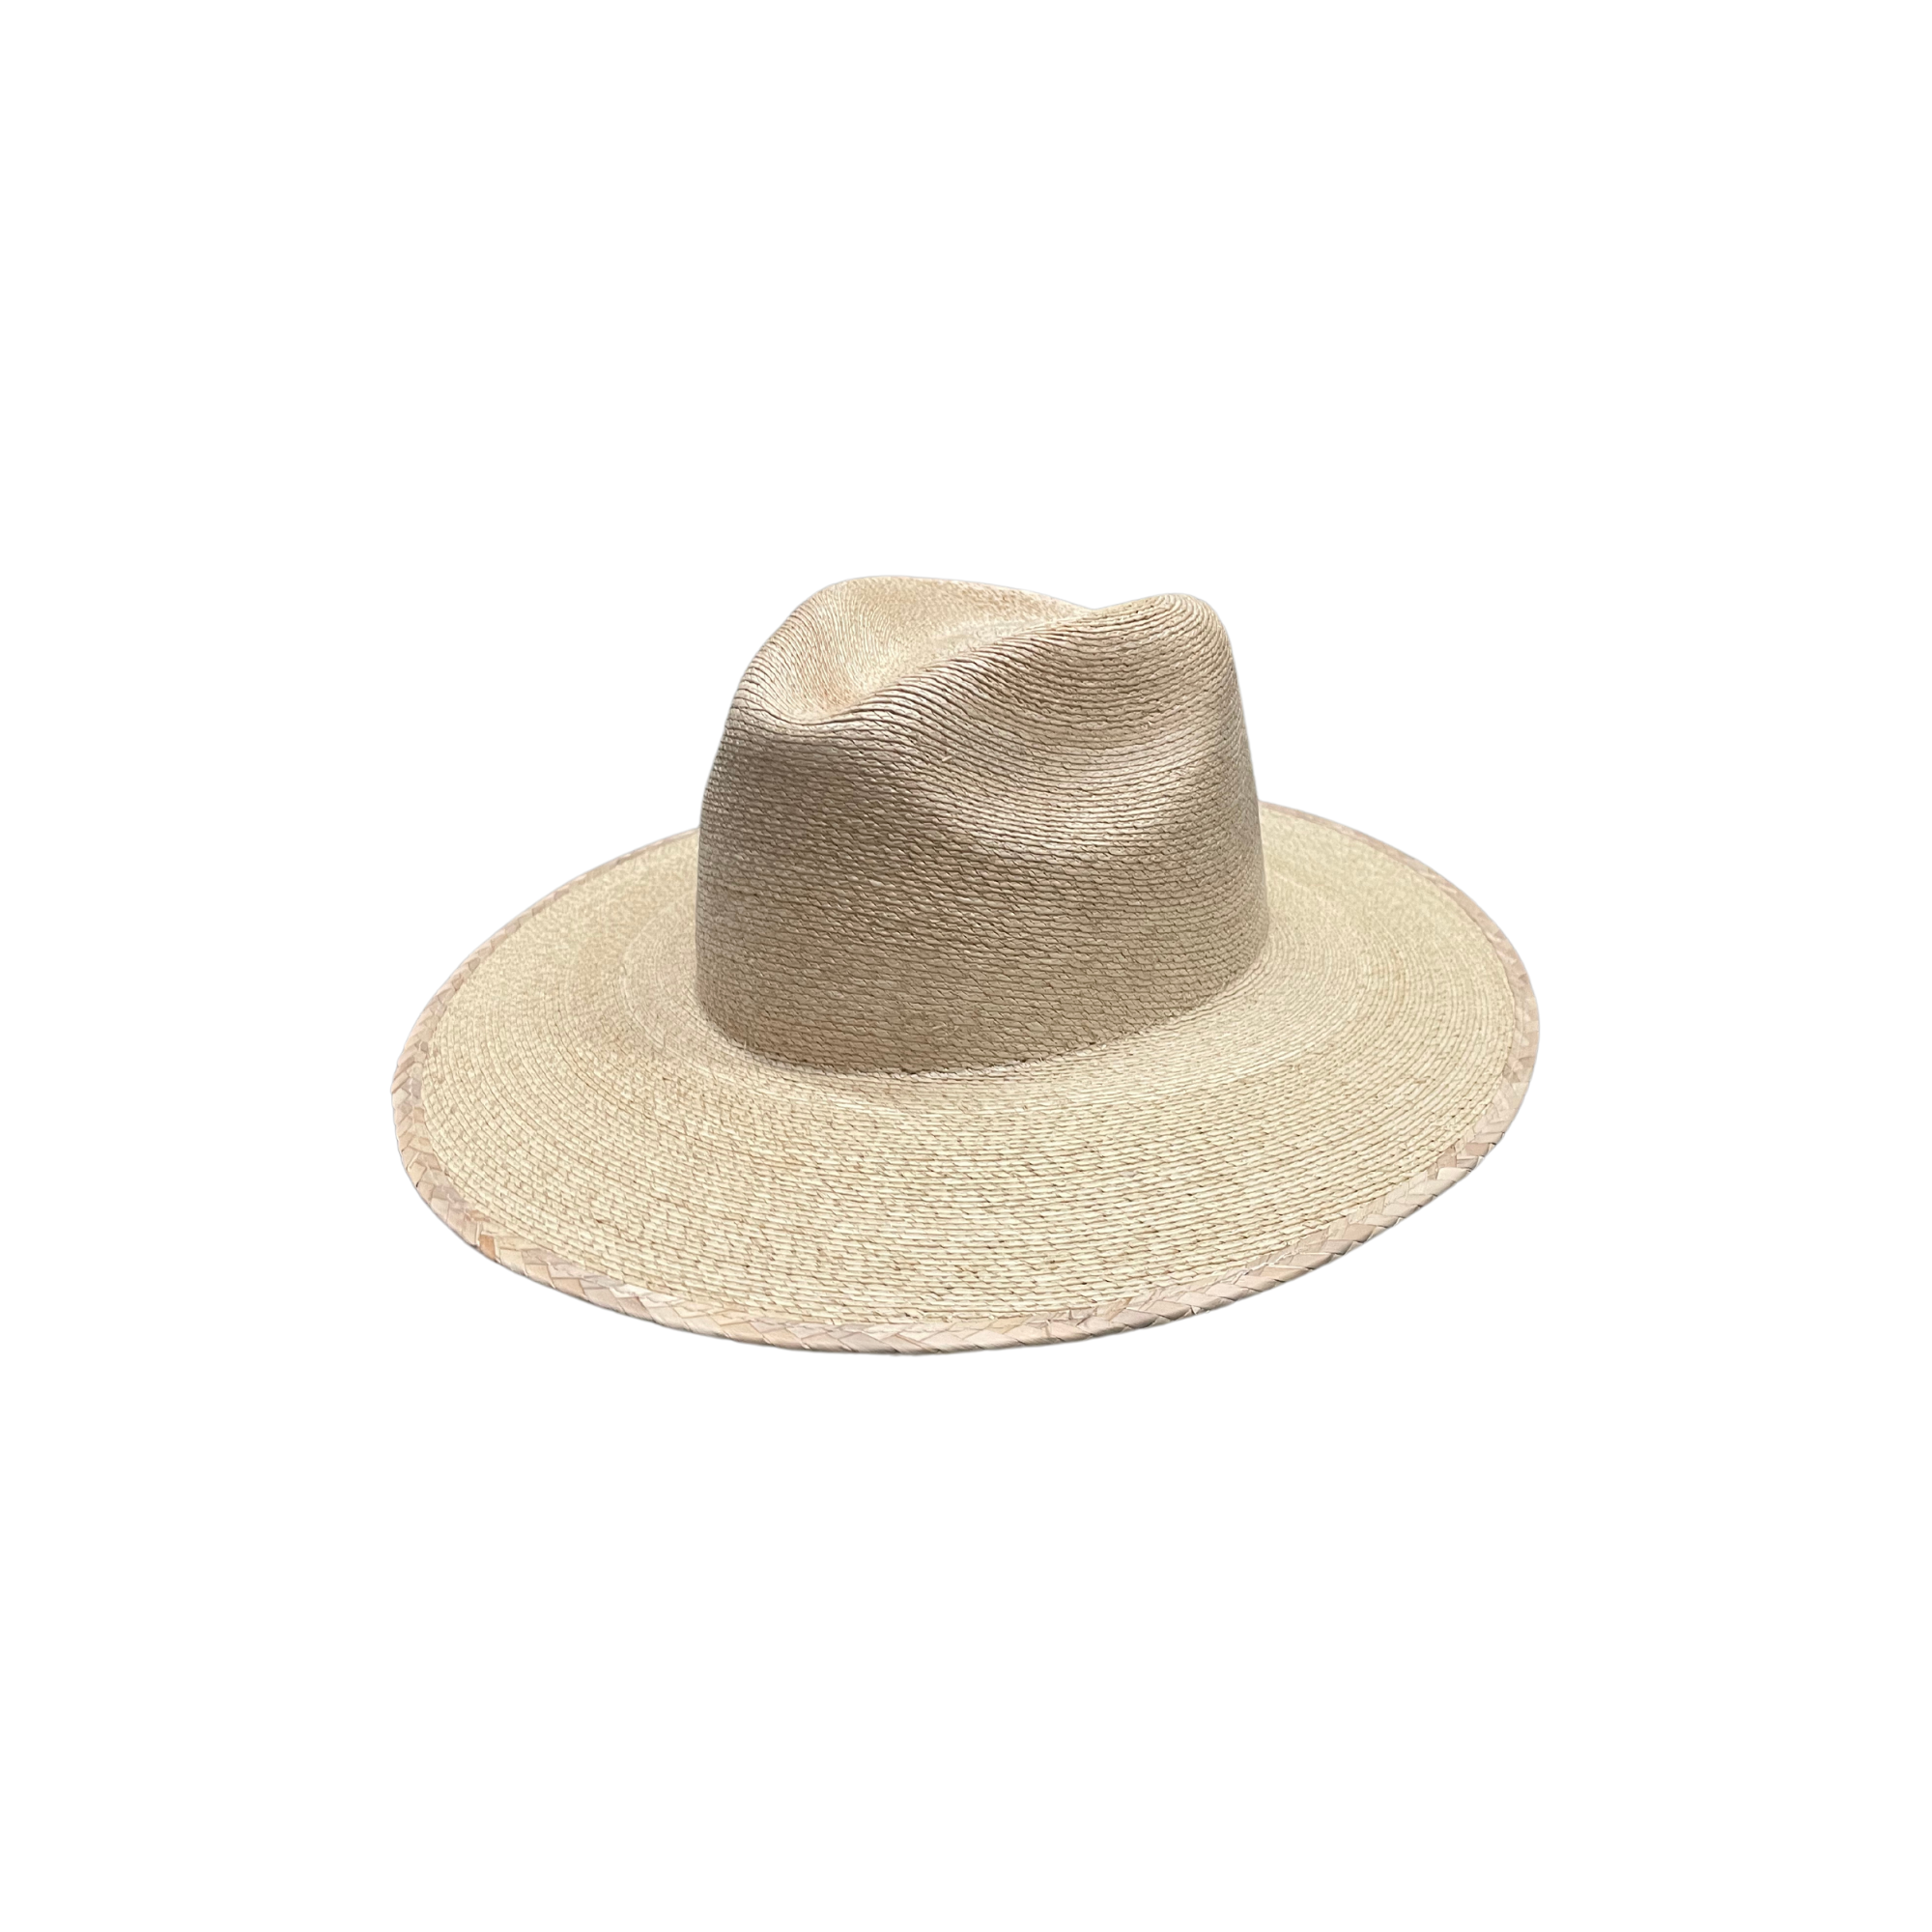 Fine Palm Leaf Rancher Brim Hats: Large